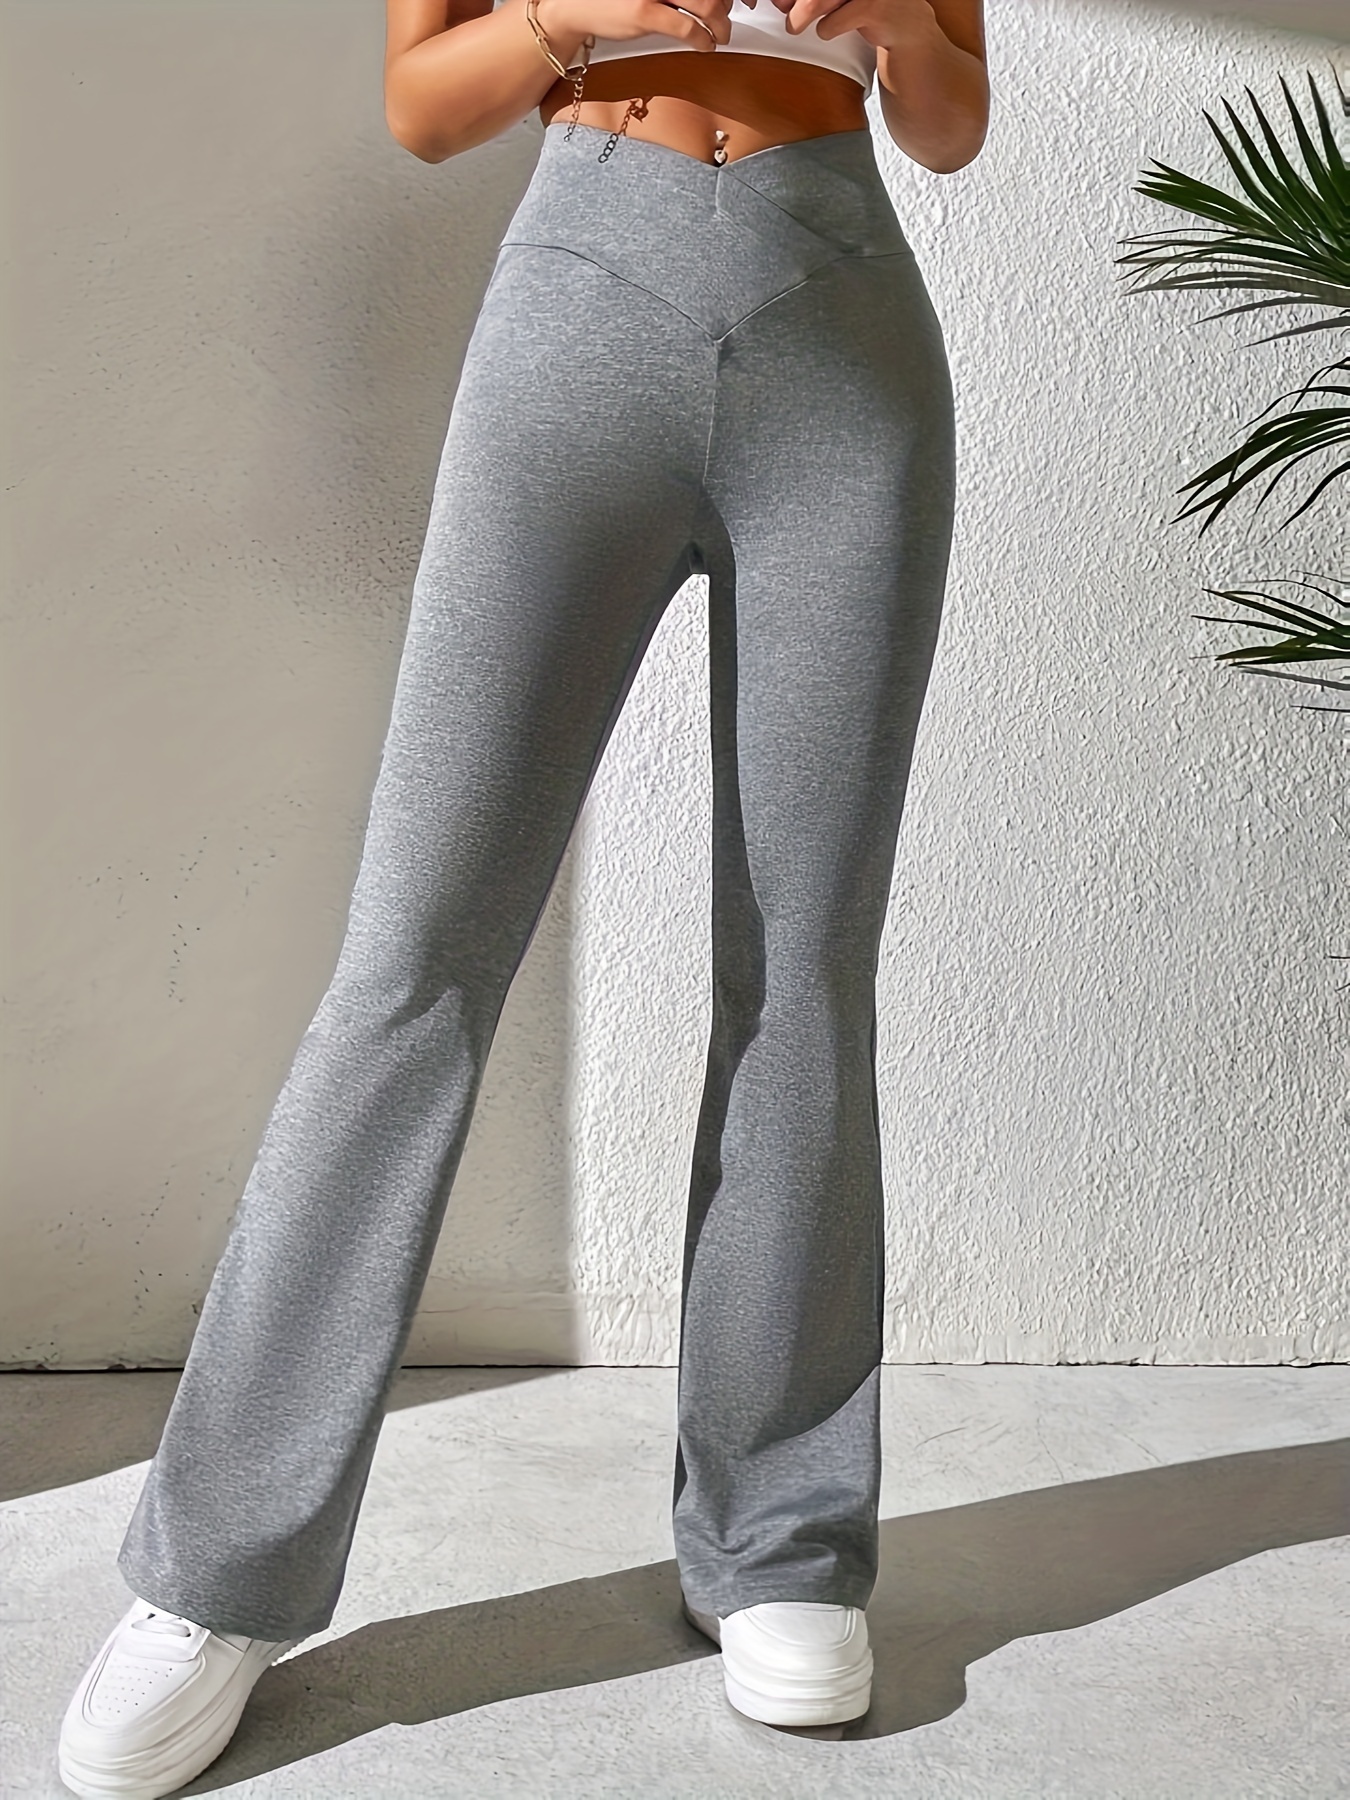 Khaki Cotton Flared Yoga Pants 4 COLOURS Comfy Leggings Yoga